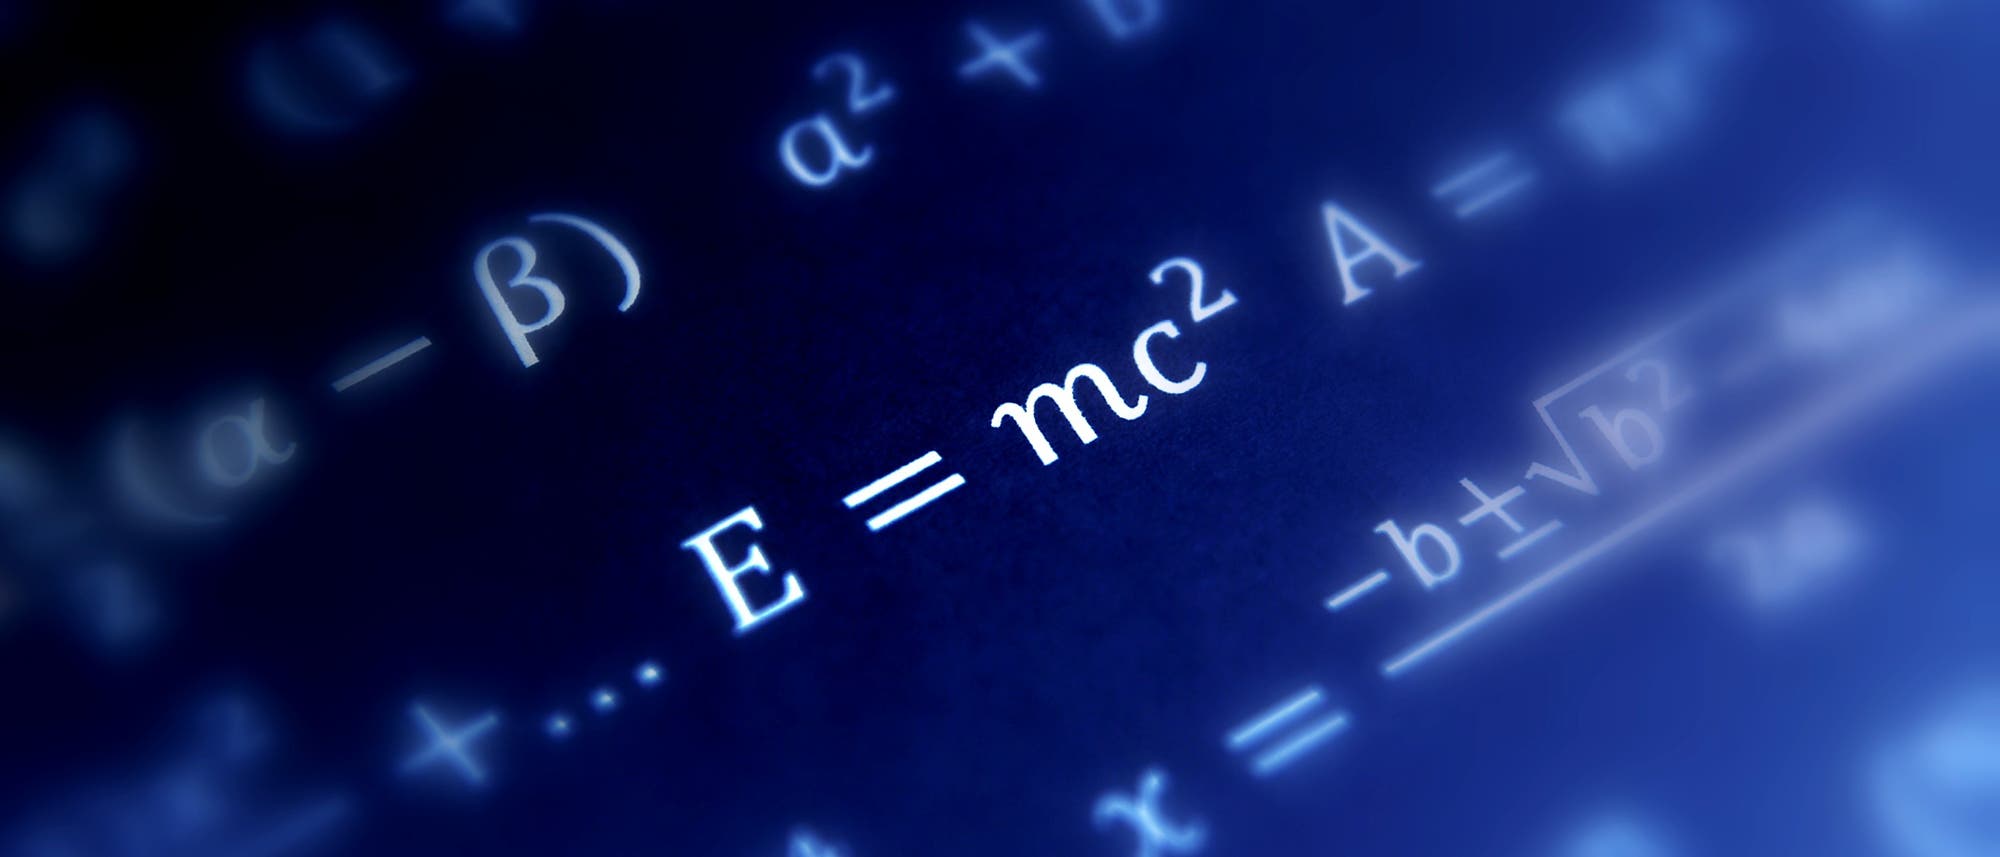 Relativitätstheorie - die bekannteste Formel der Welt